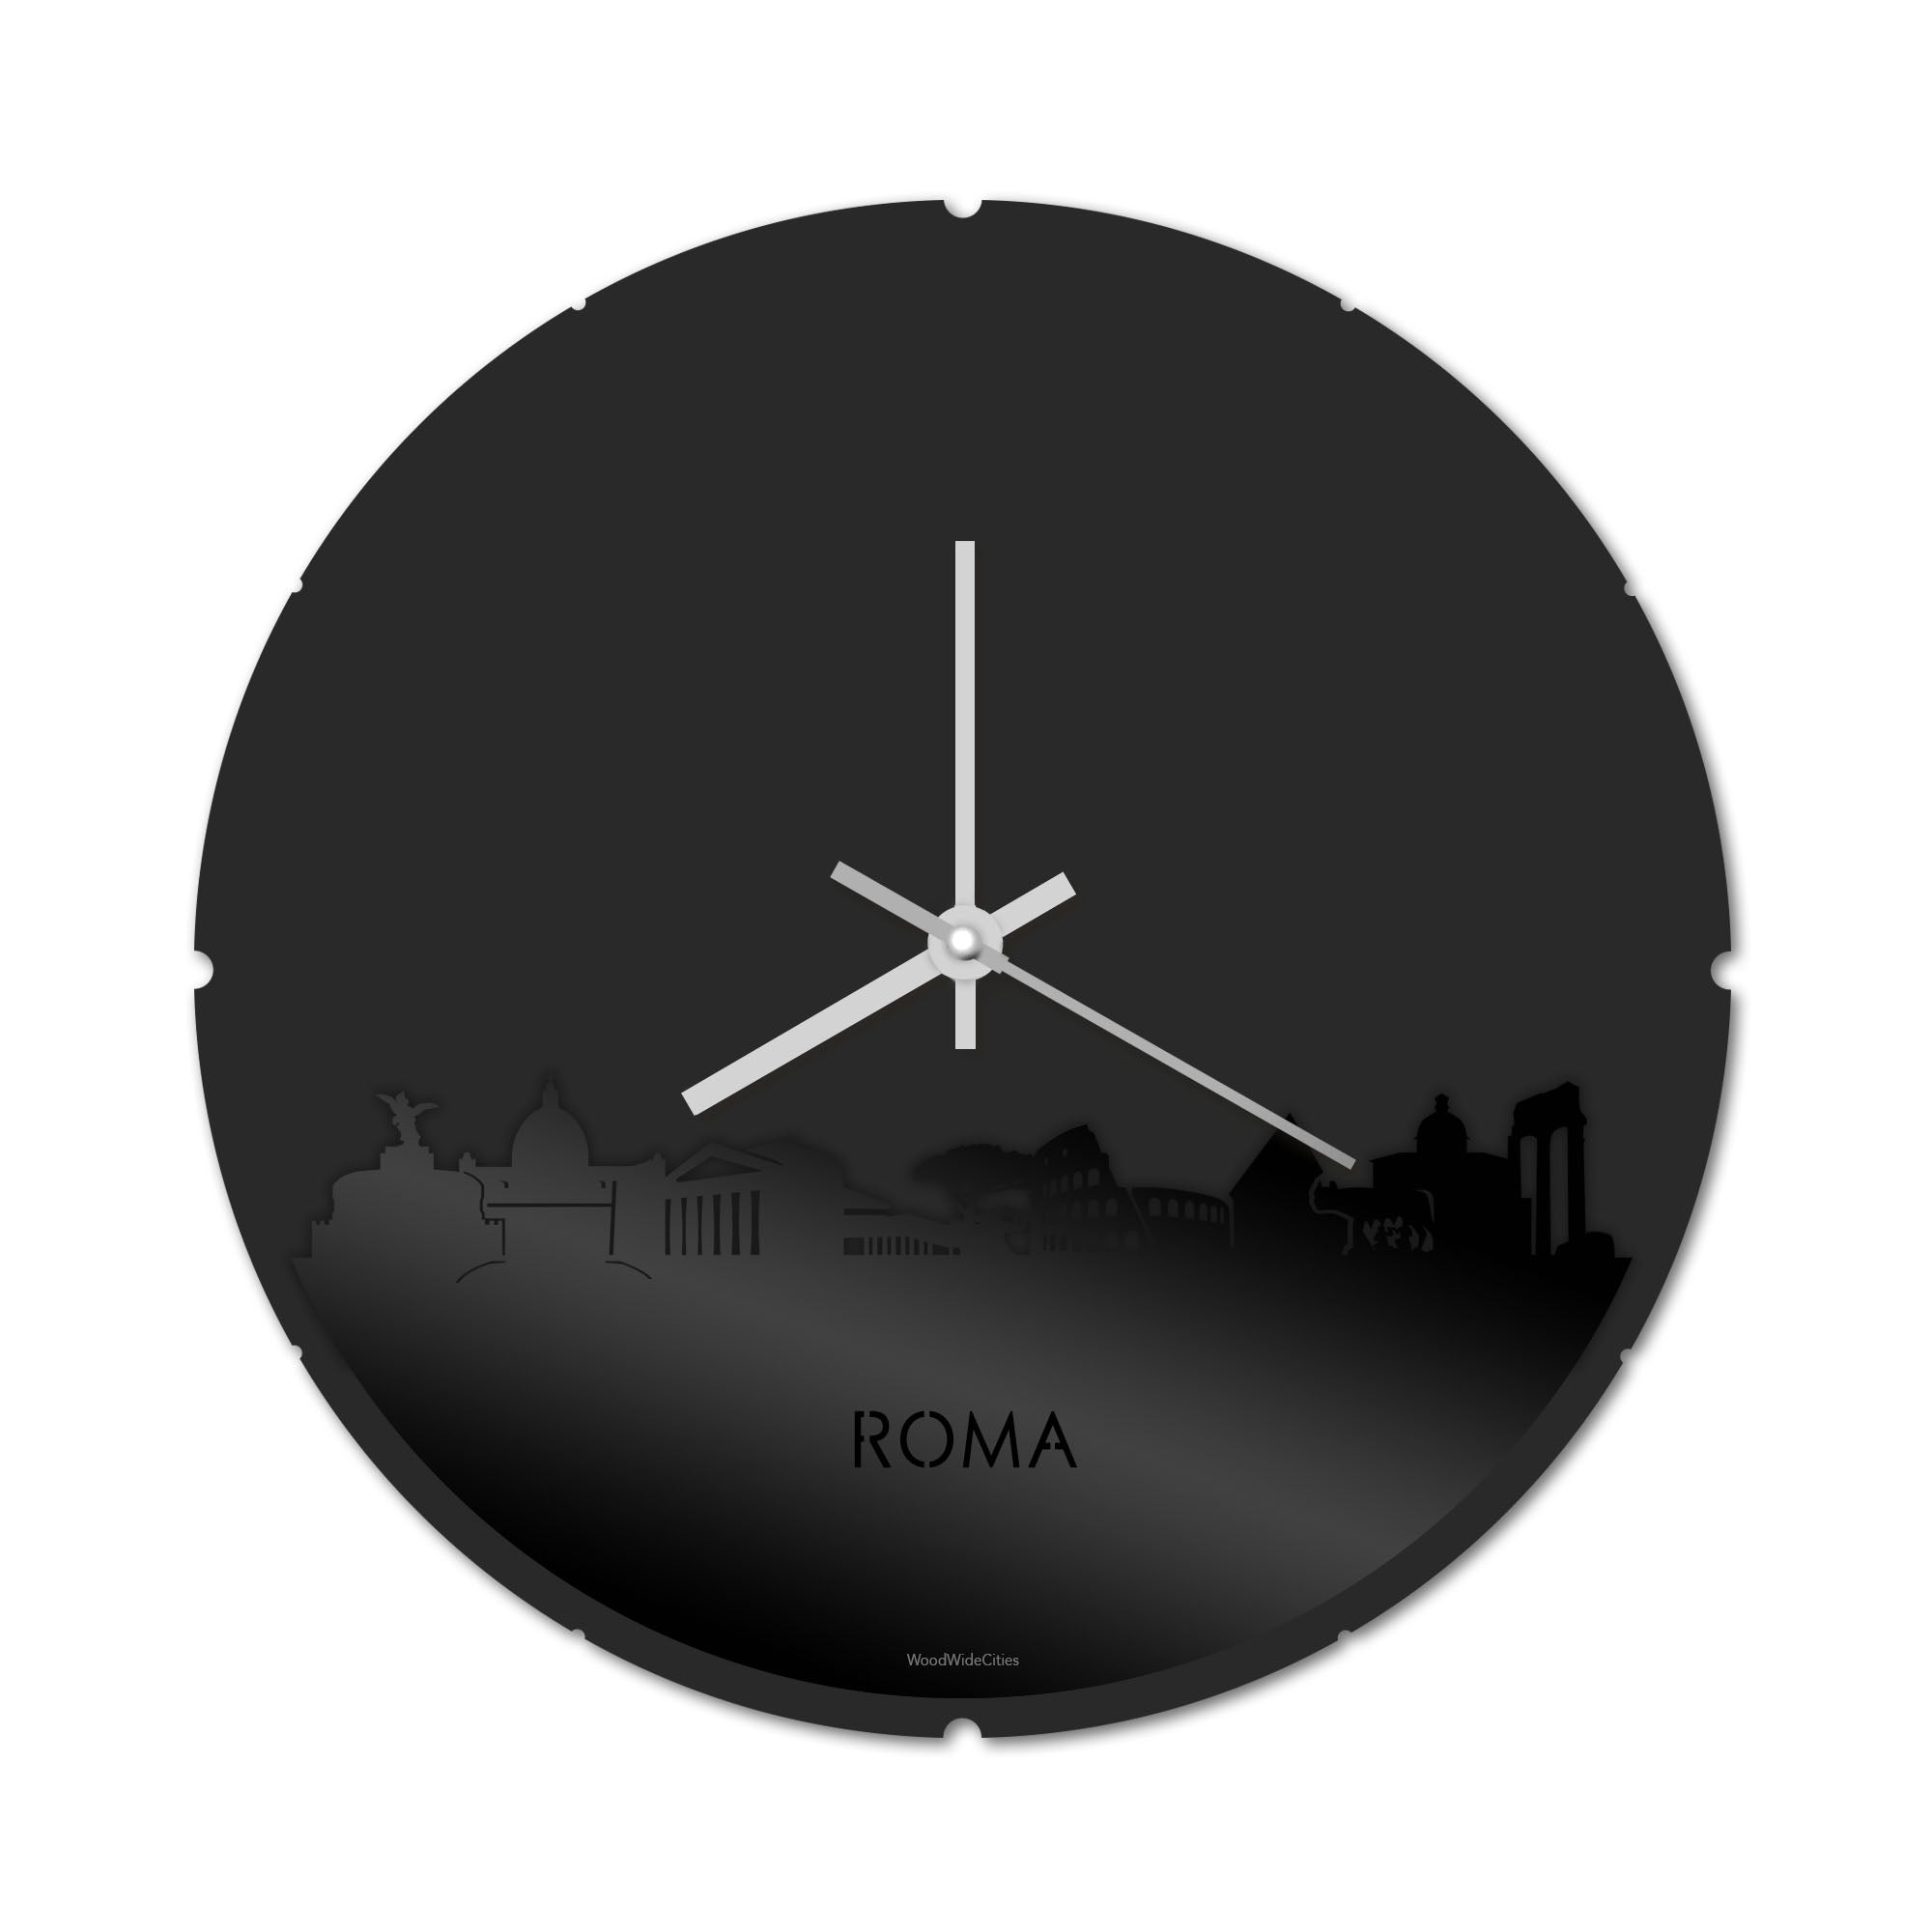 Skyline Klok Rond Rome Zwart glanzend gerecycled kunststof cadeau decoratie relatiegeschenk van WoodWideCities